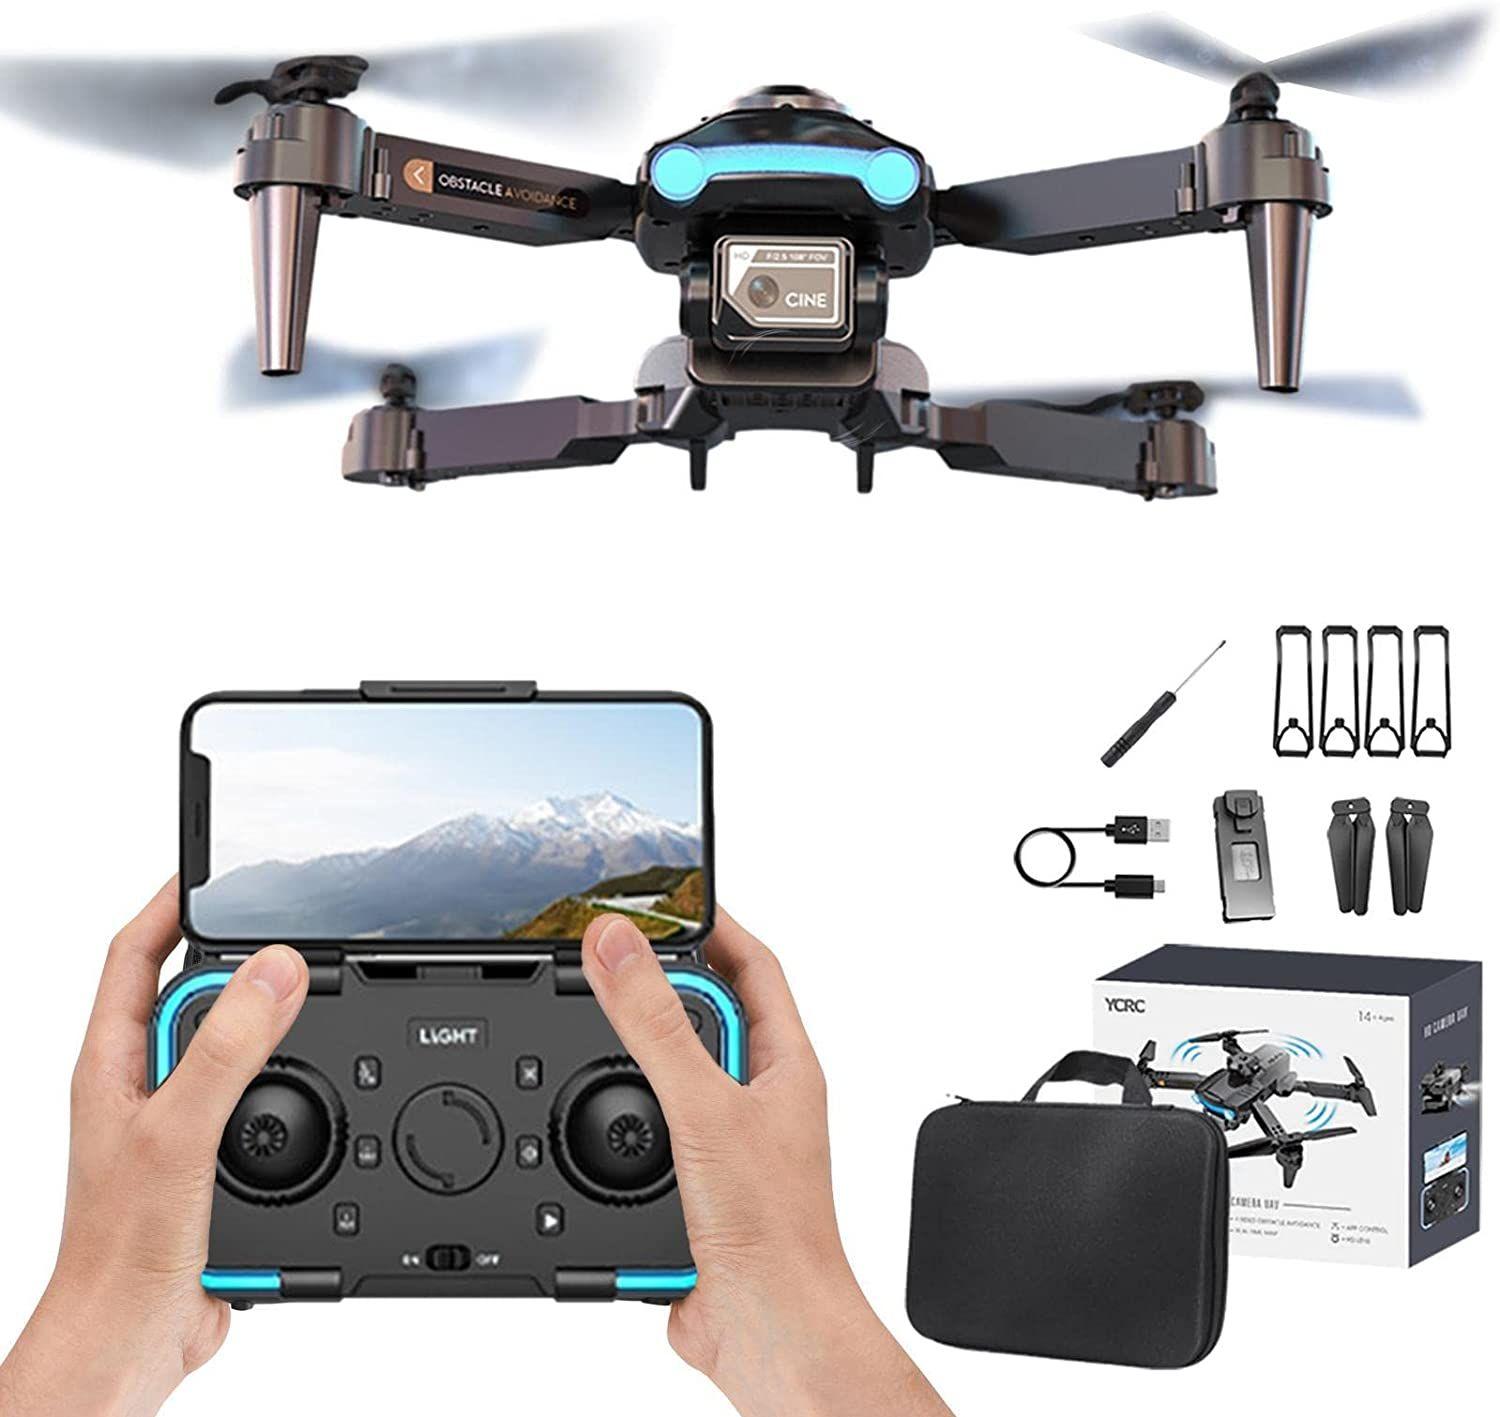 4k Caméra Gps Drone Pour Adultes, Transfert Dimage Haute